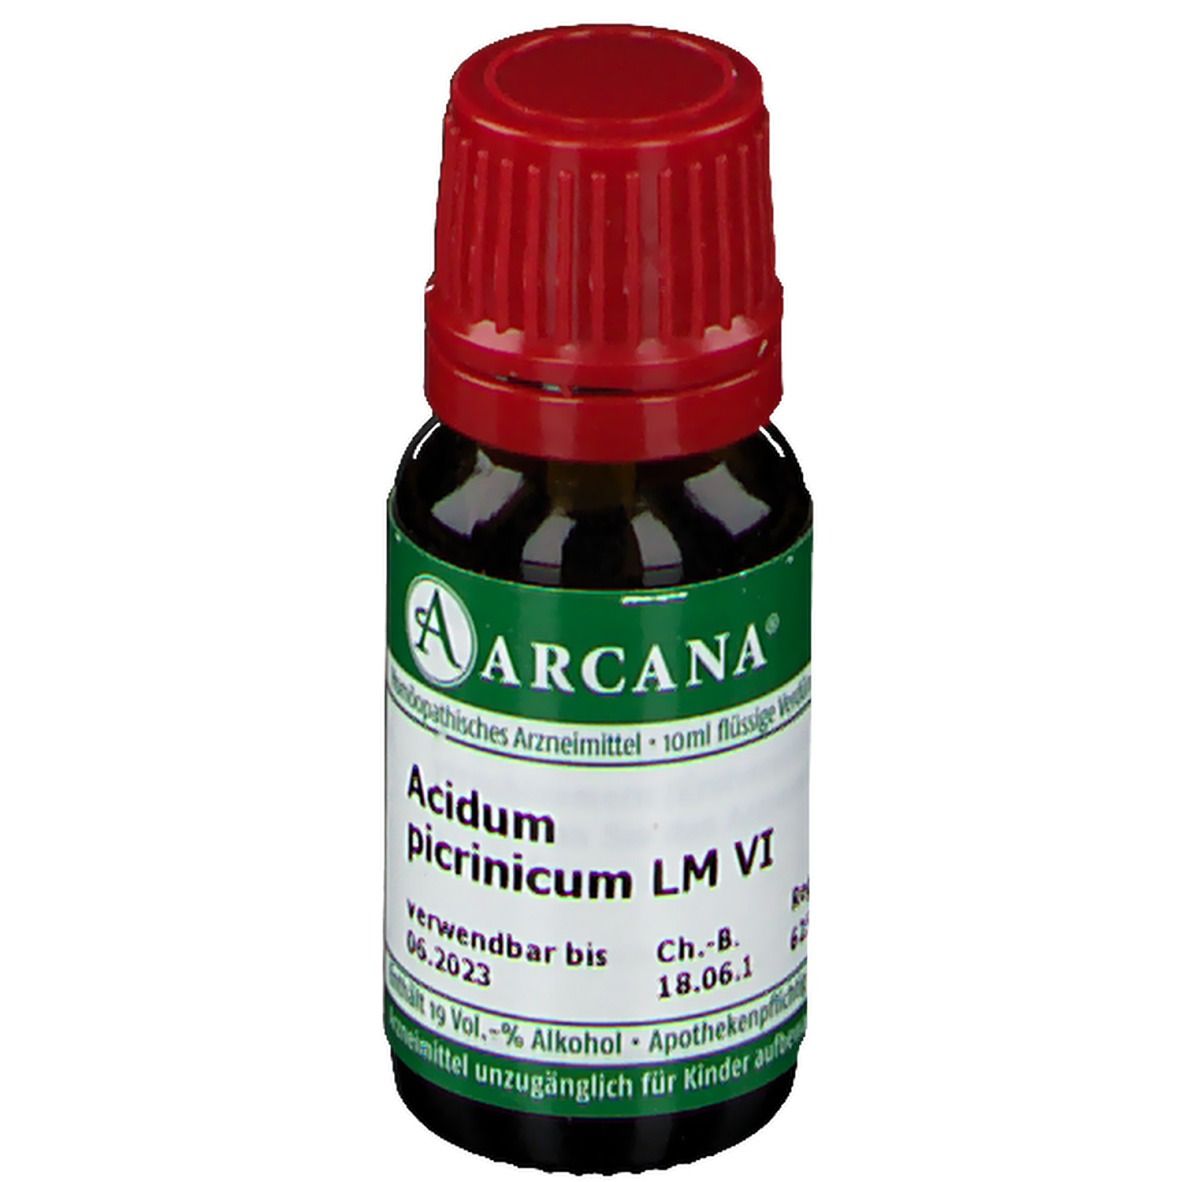 Arcana® Acidum Picrinicum LM VI